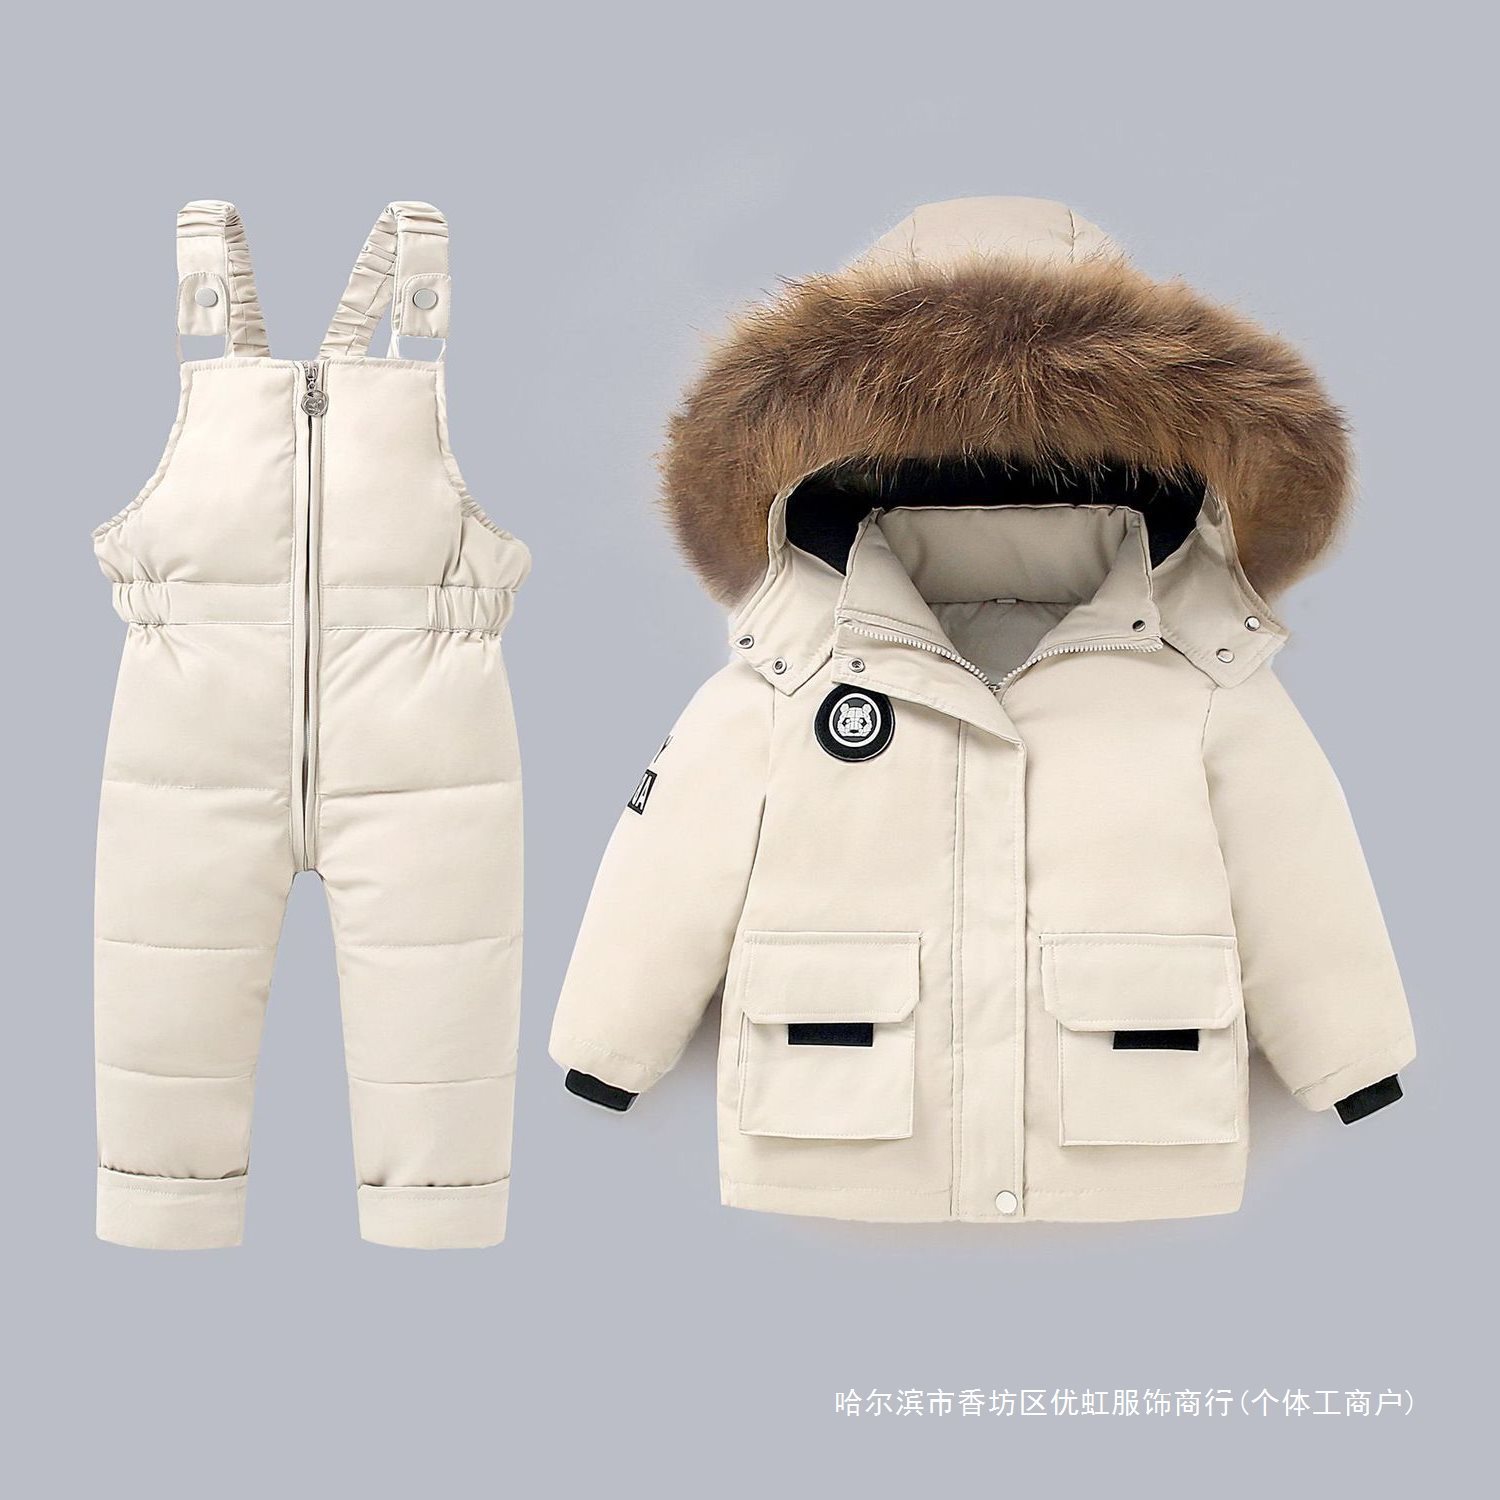 宝宝羽绒服套装冬装1-5岁婴幼儿加厚外套男童女童背带连帽两件套3